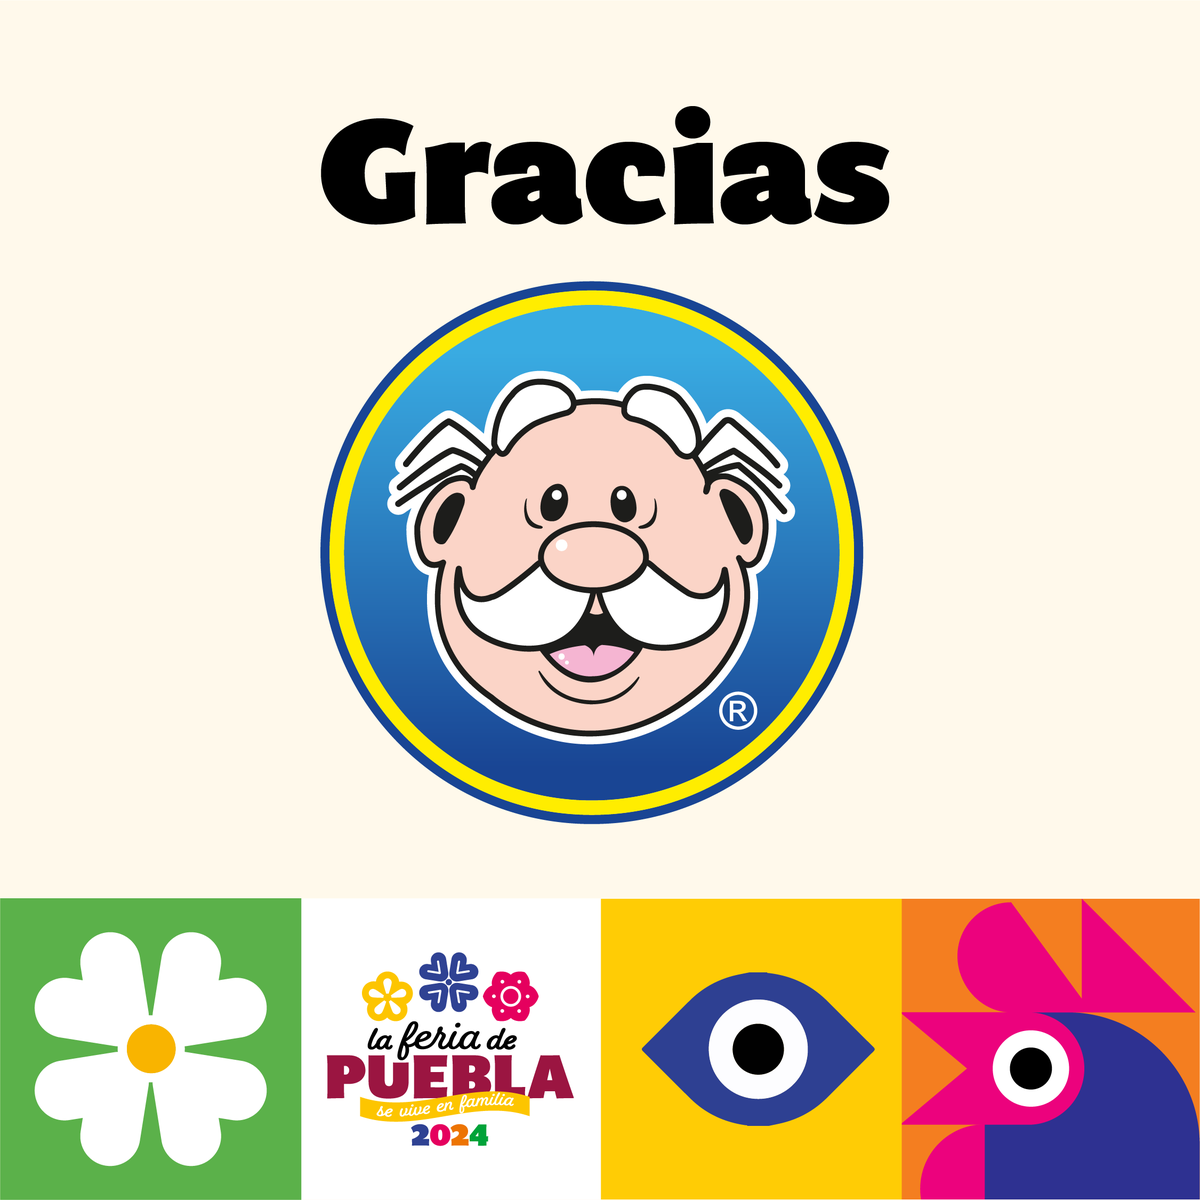 😍 Gracias al Dr. Simi, por ser patrocinador oficial de la Feria de Puebla 2024. 👨‍⚕️ ¡Juntos creamos magia en la Fabrica de la Alegría! 🙌 #FeriaDePuebla2024